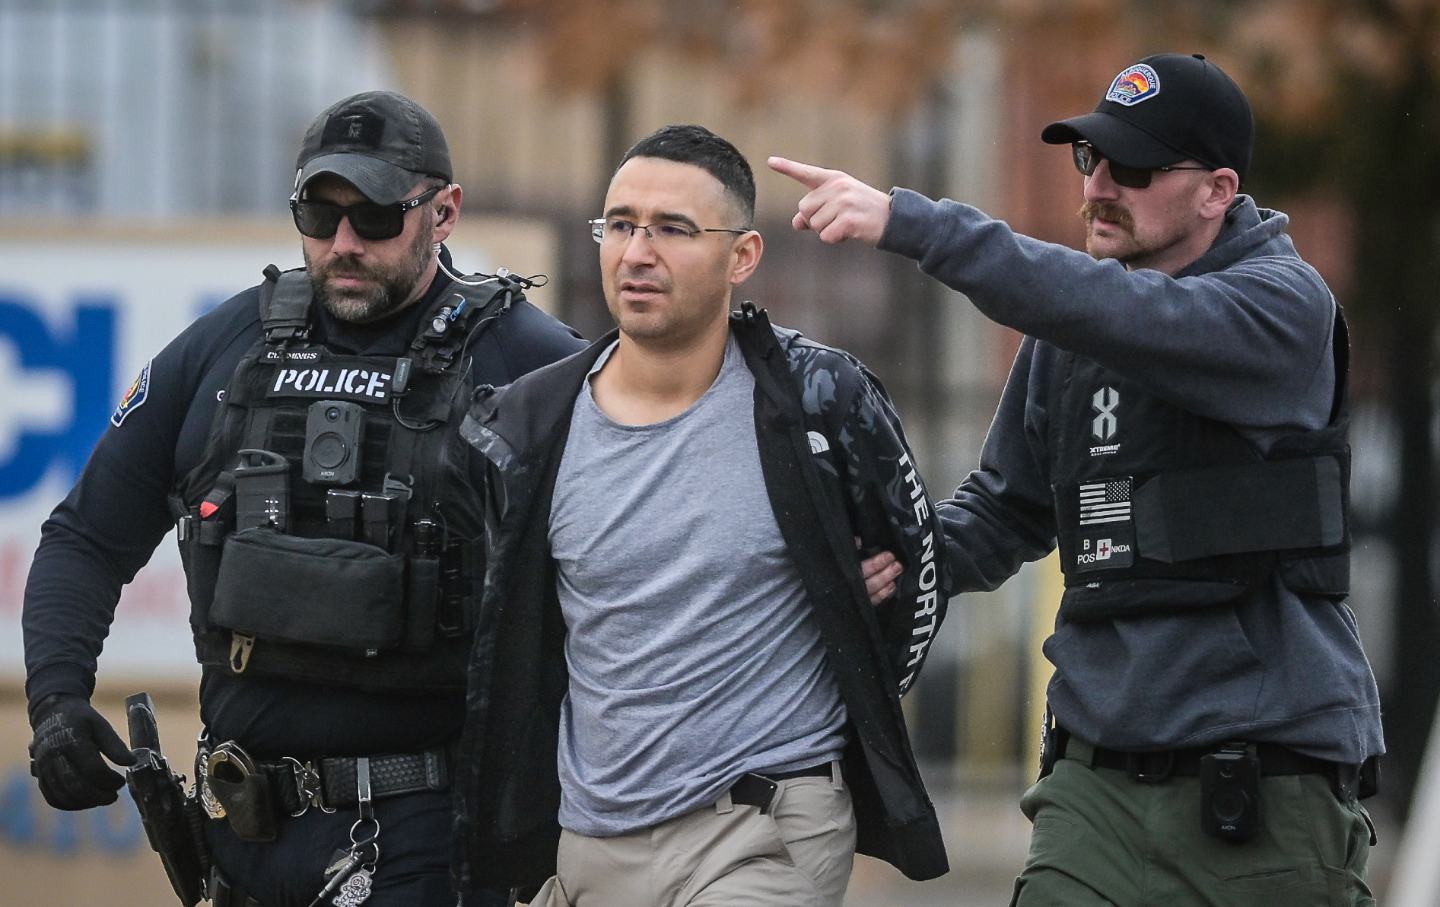 Solomon Peña taken into custody